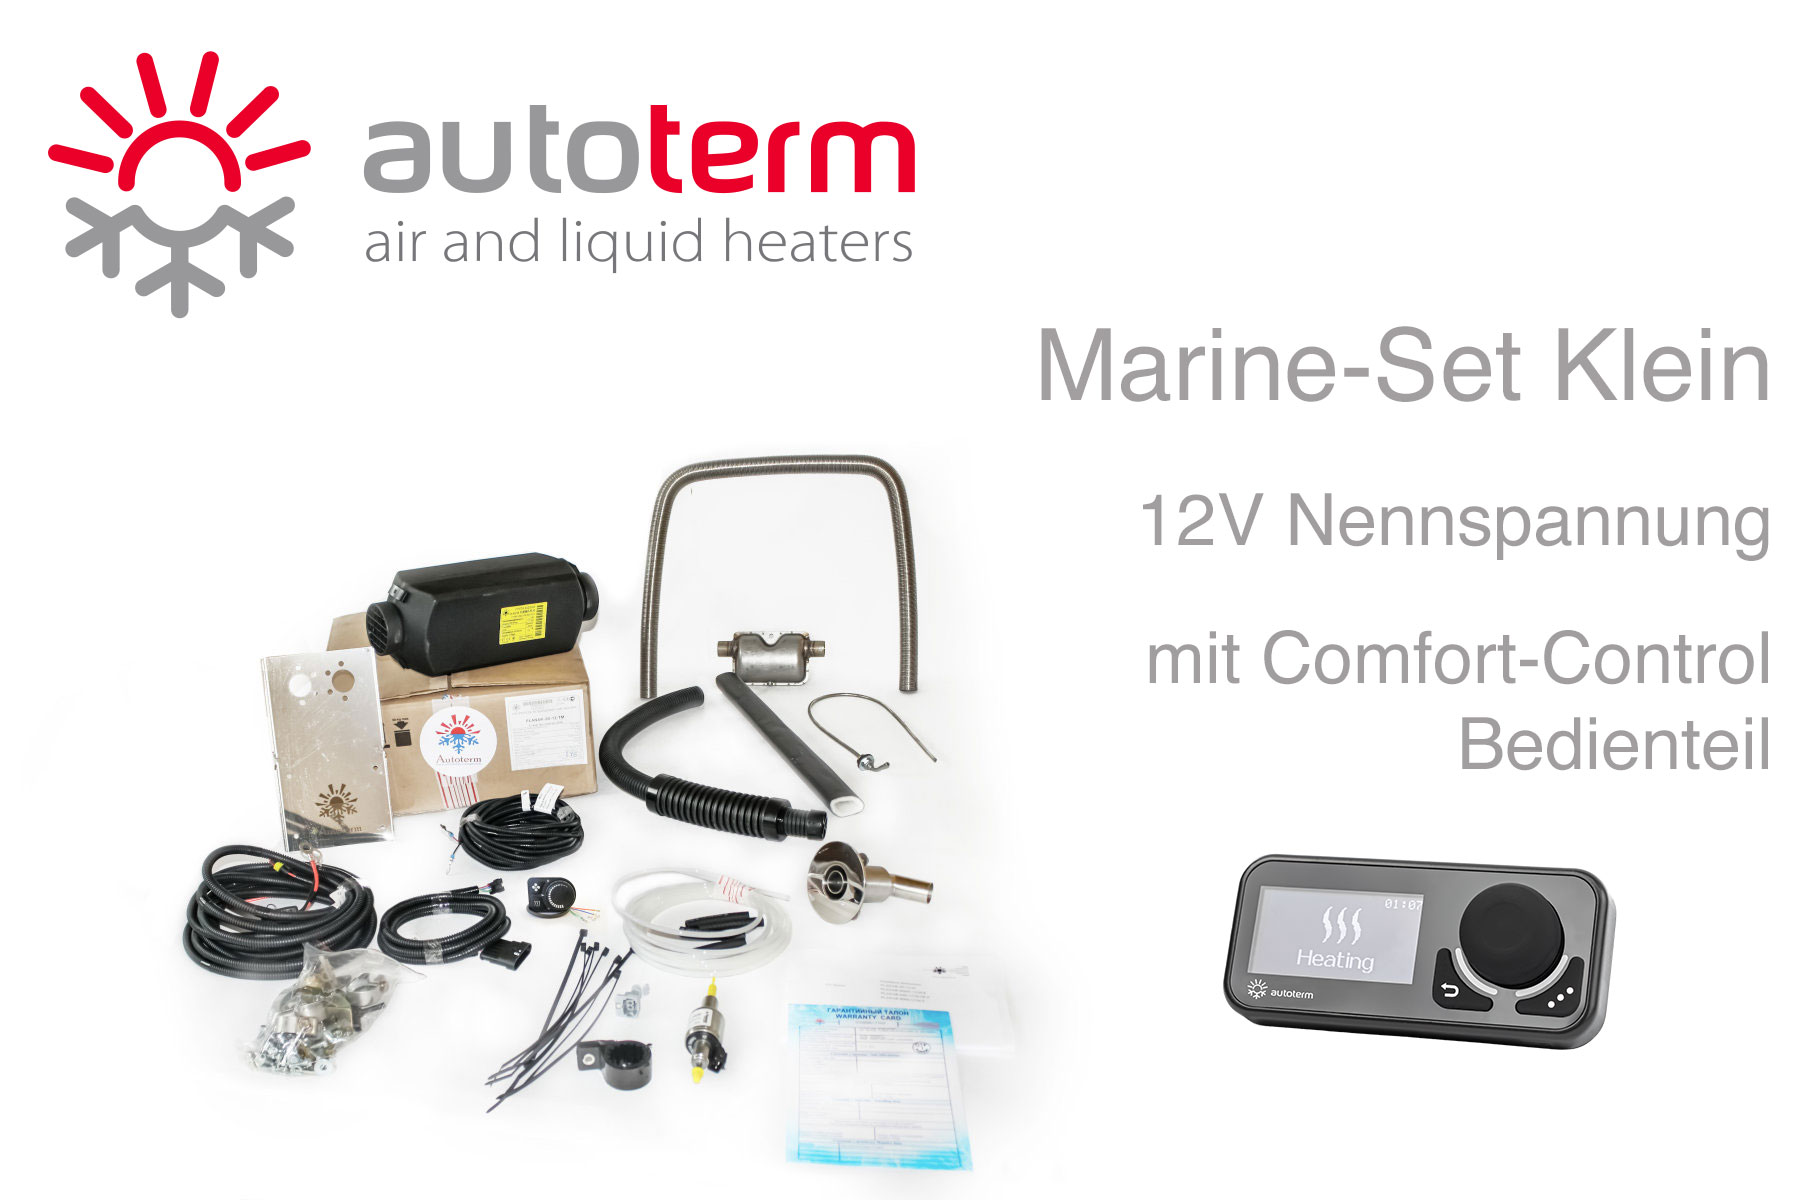 Autoterm Air 4D Diesel Warmluftheizung Marine Set klein, 12V, Comfort-Control